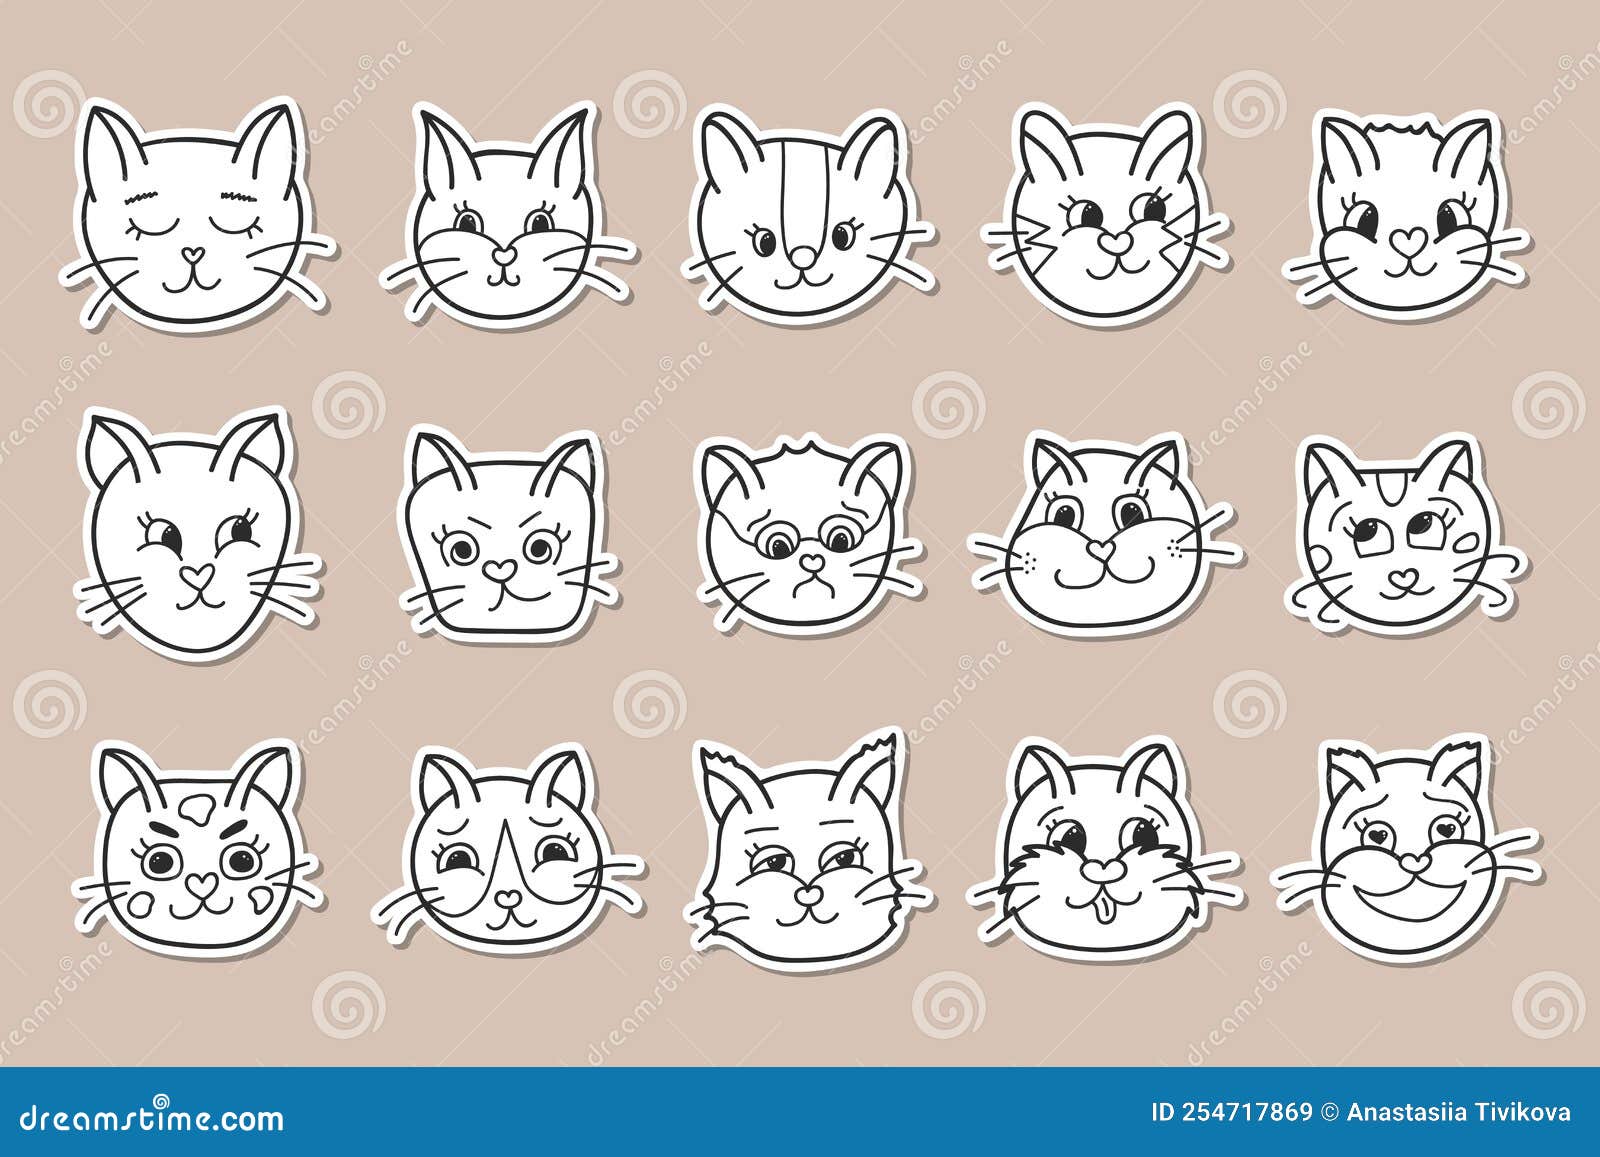 Emoções De Gatos Rostos. Gatinho Bonito Avatares Animais De